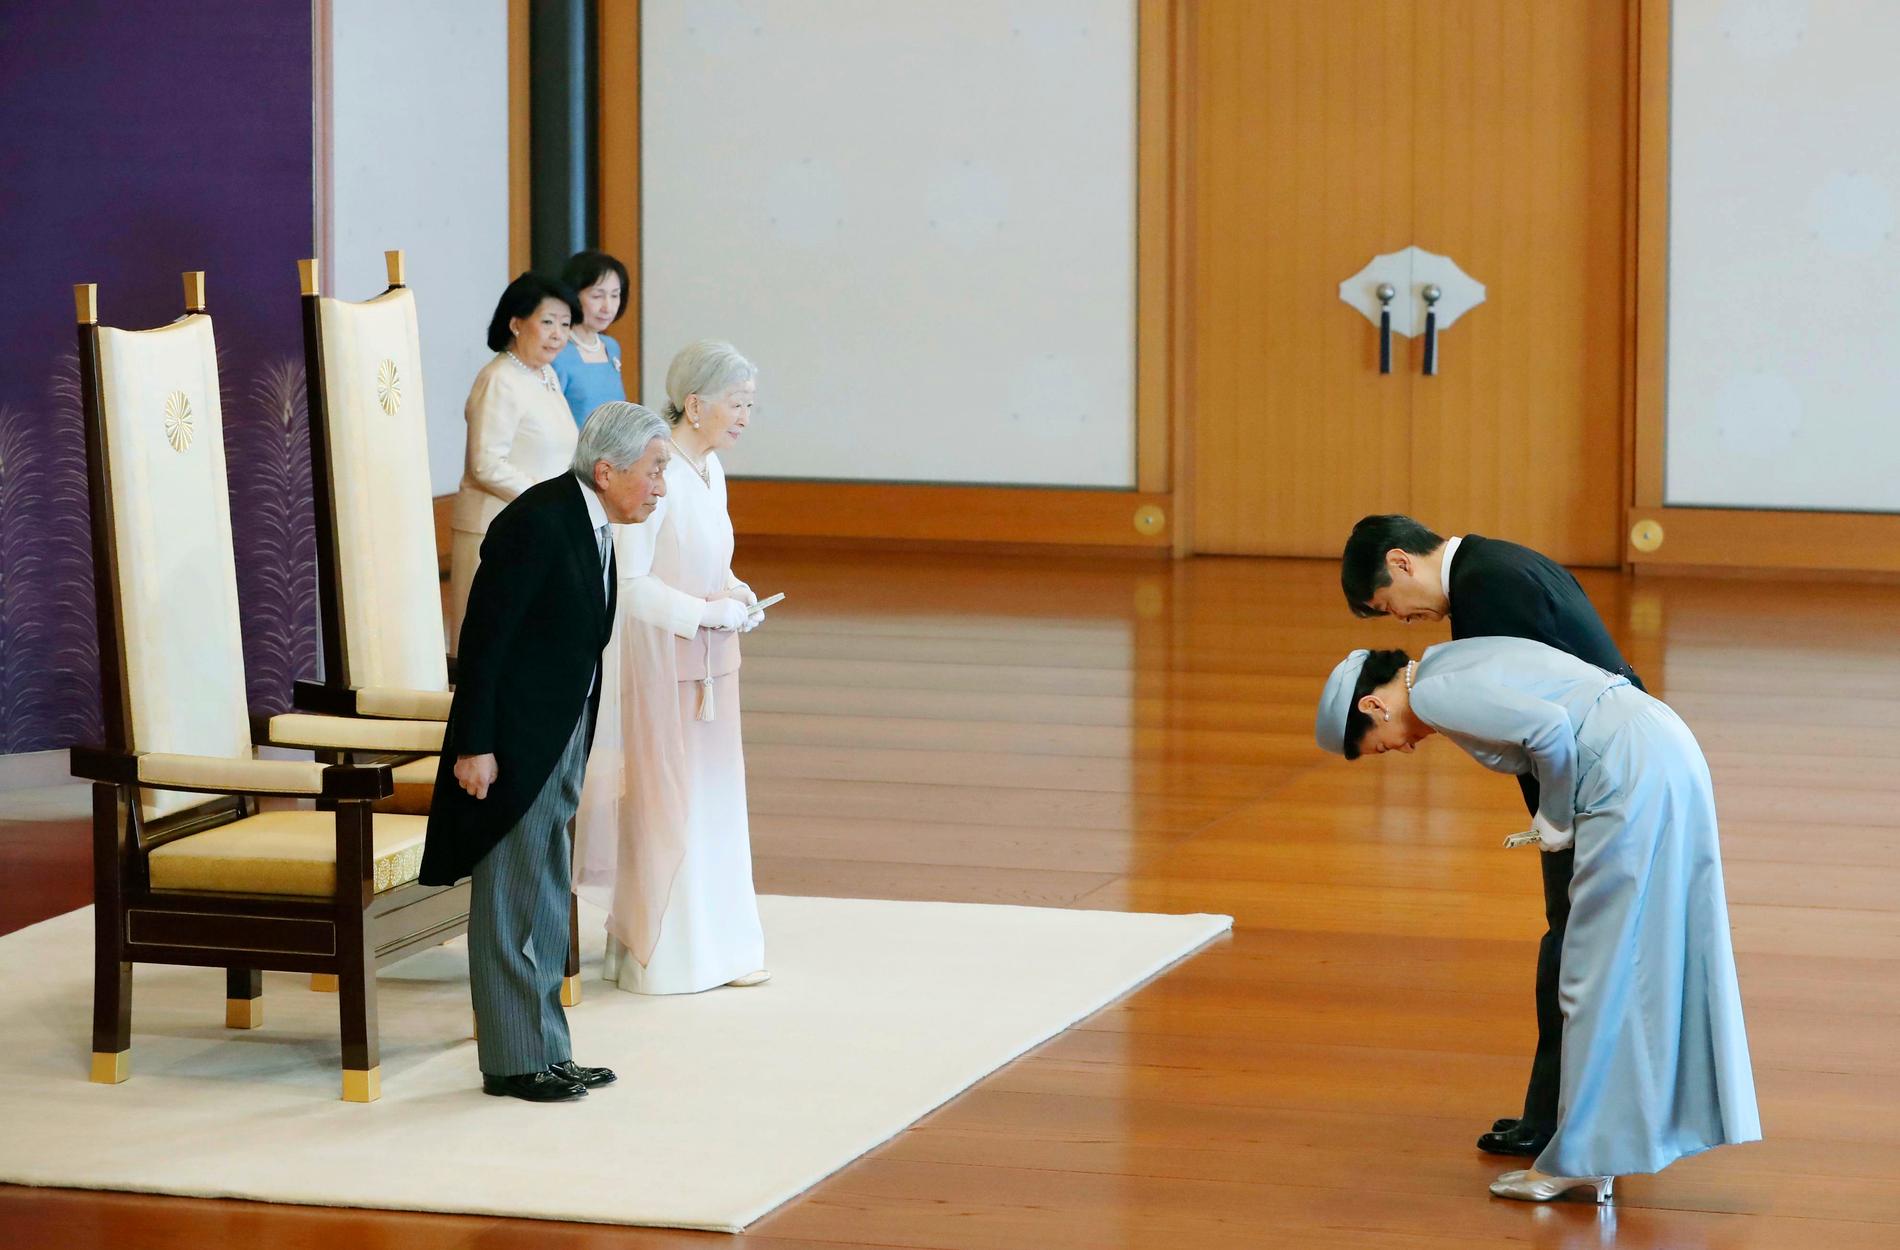 Japans kejsare Akihito och kejsarinnan Michiko till vänster hälsar på kronprins Naruhito och kronprinsessan Masako. Vid månadsskiftet april-maj påbörjar Japan sin nya era då kejsaren abdikerar och kronprinsen tar över.